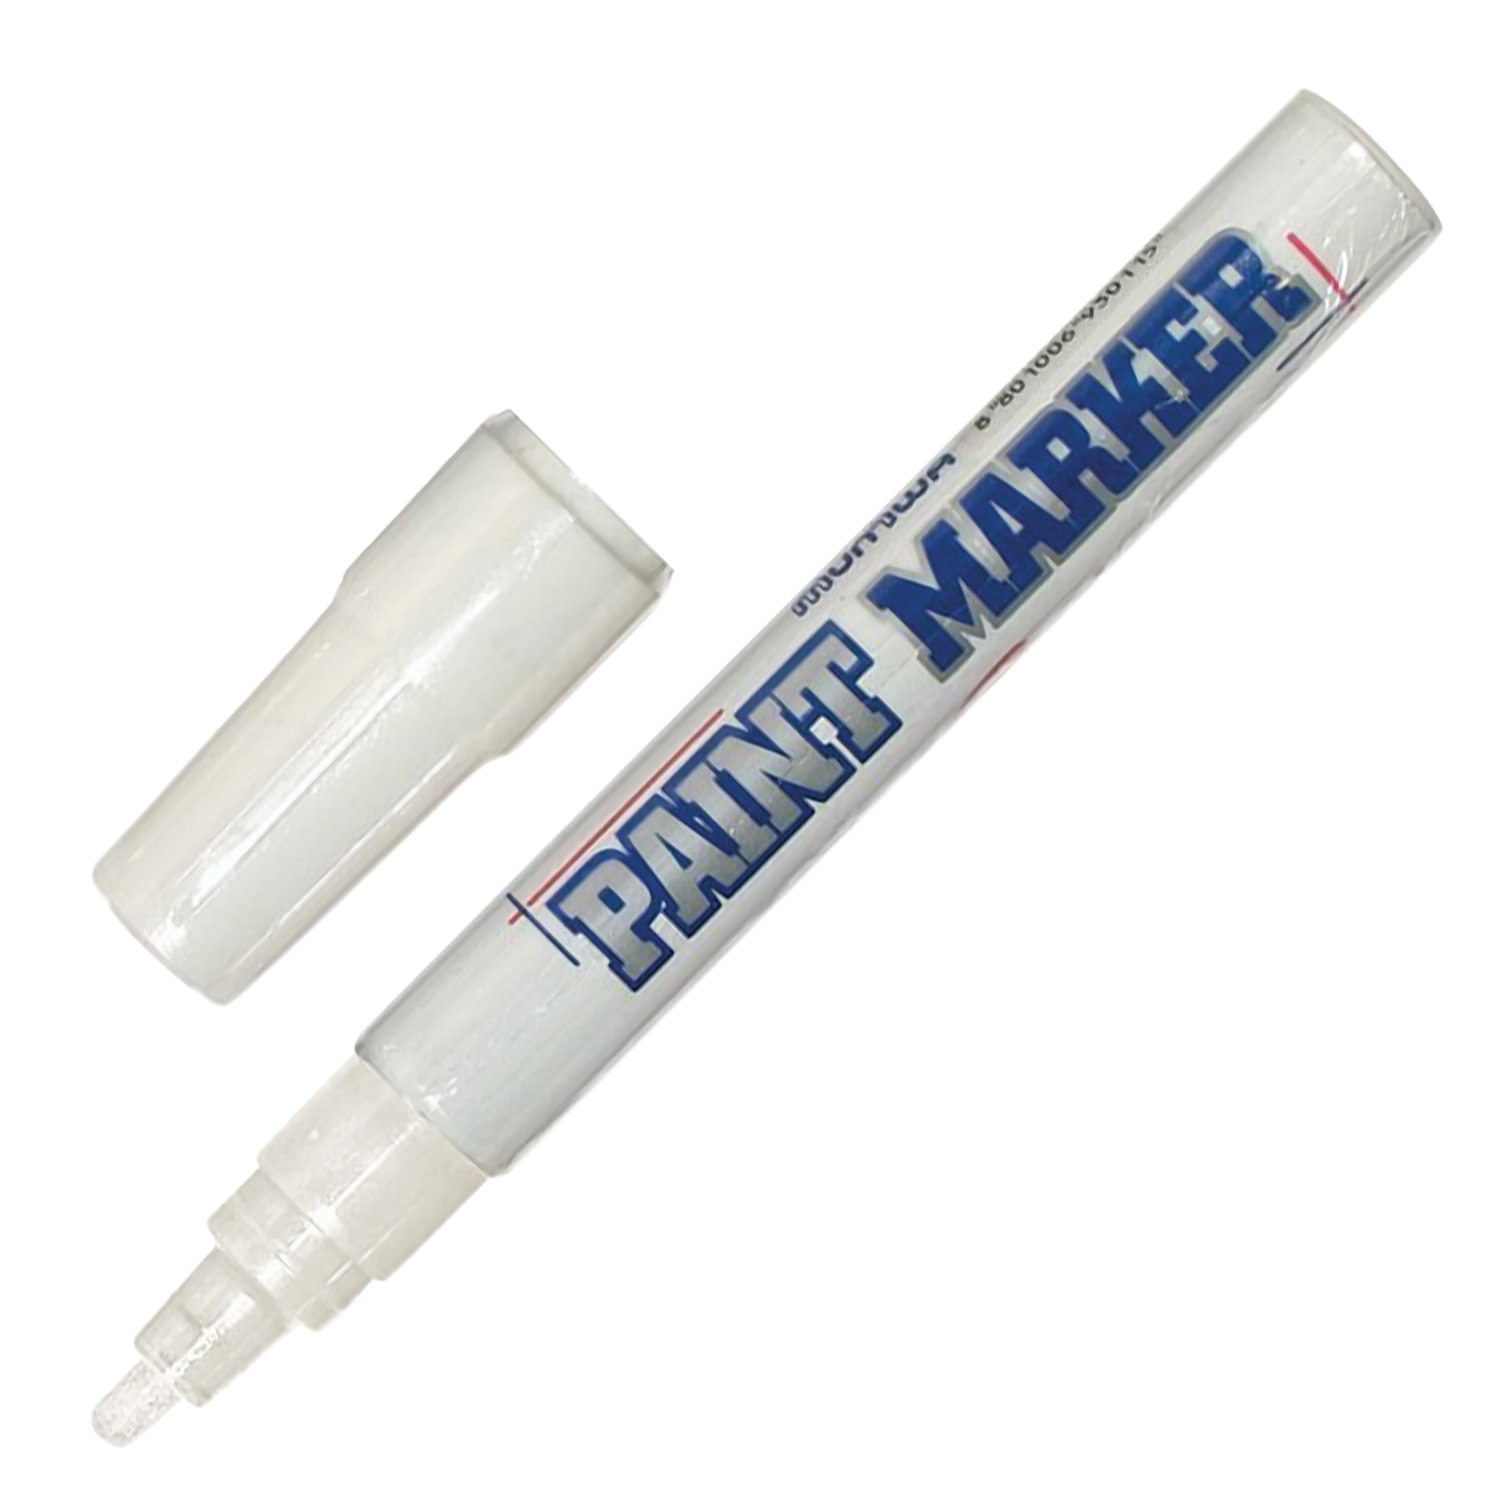 Маркер-краска лаковый (paint marker) MUNHWA, 4 мм, БЕЛЫЙ, нитро-основа, алюминиевый корпус, PM-05 купите по выгодной цене